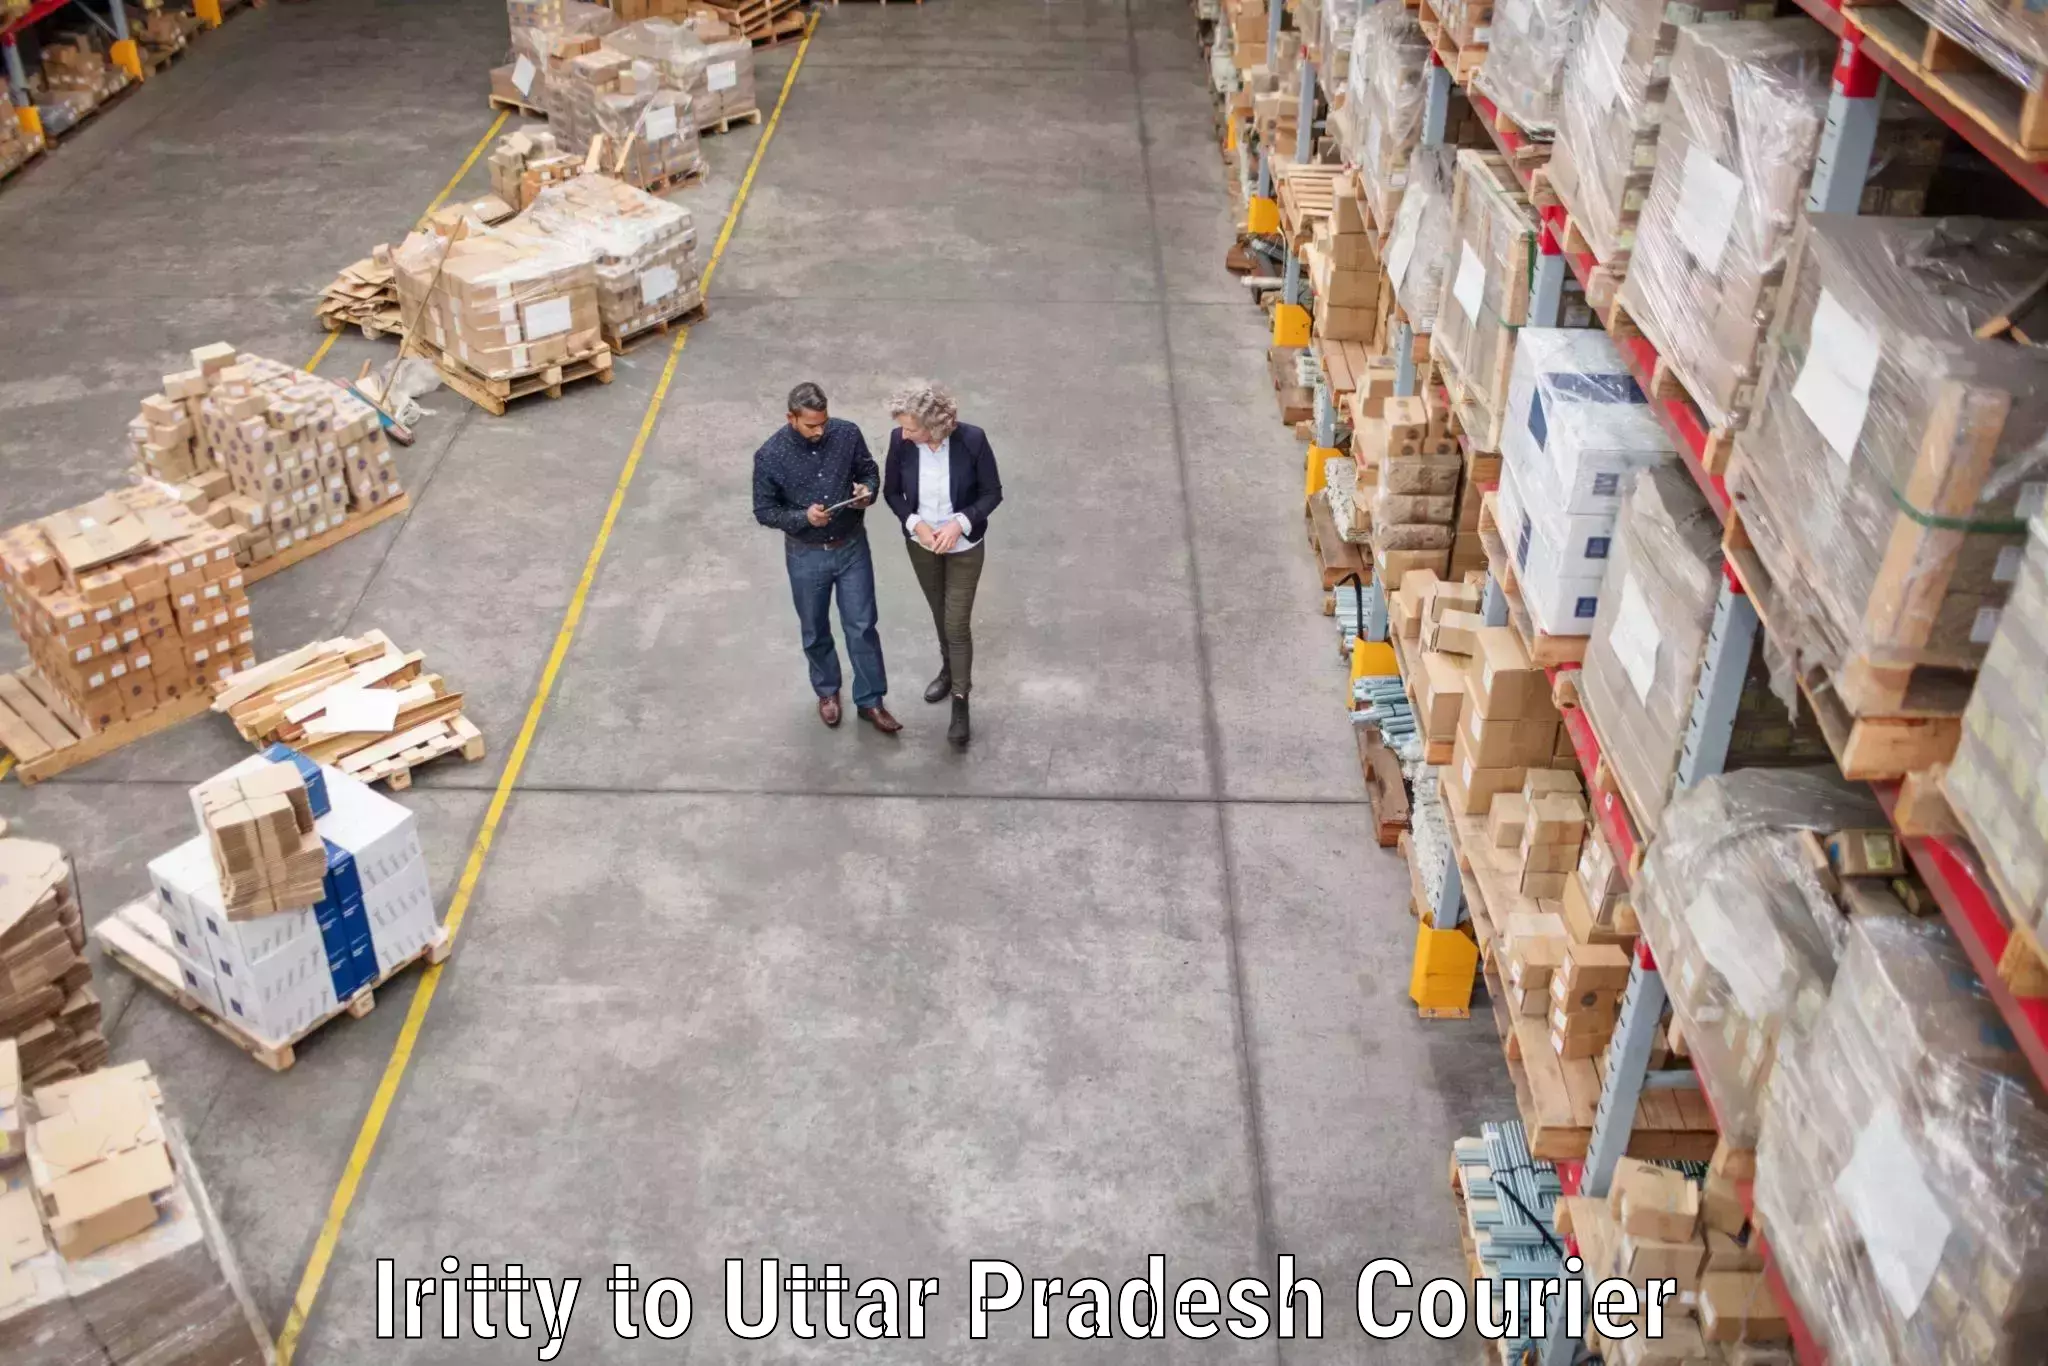 Household moving experts Iritty to Uttar Pradesh